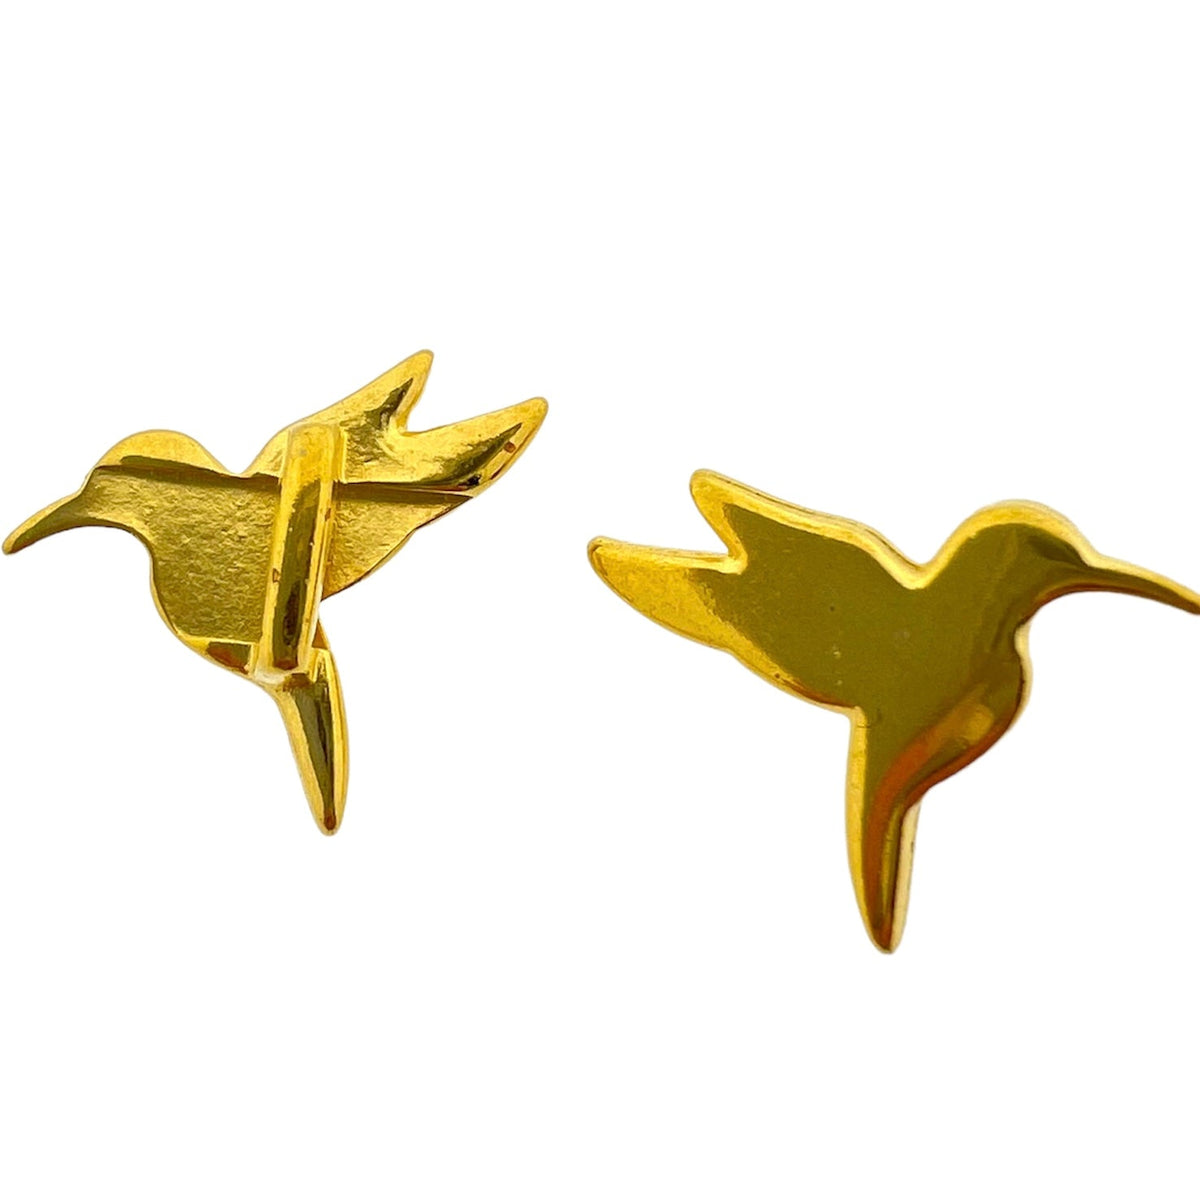 Leerschuiver vogel goud 18x14mm DQ-leerschuivers-Kraaltjes van Renate